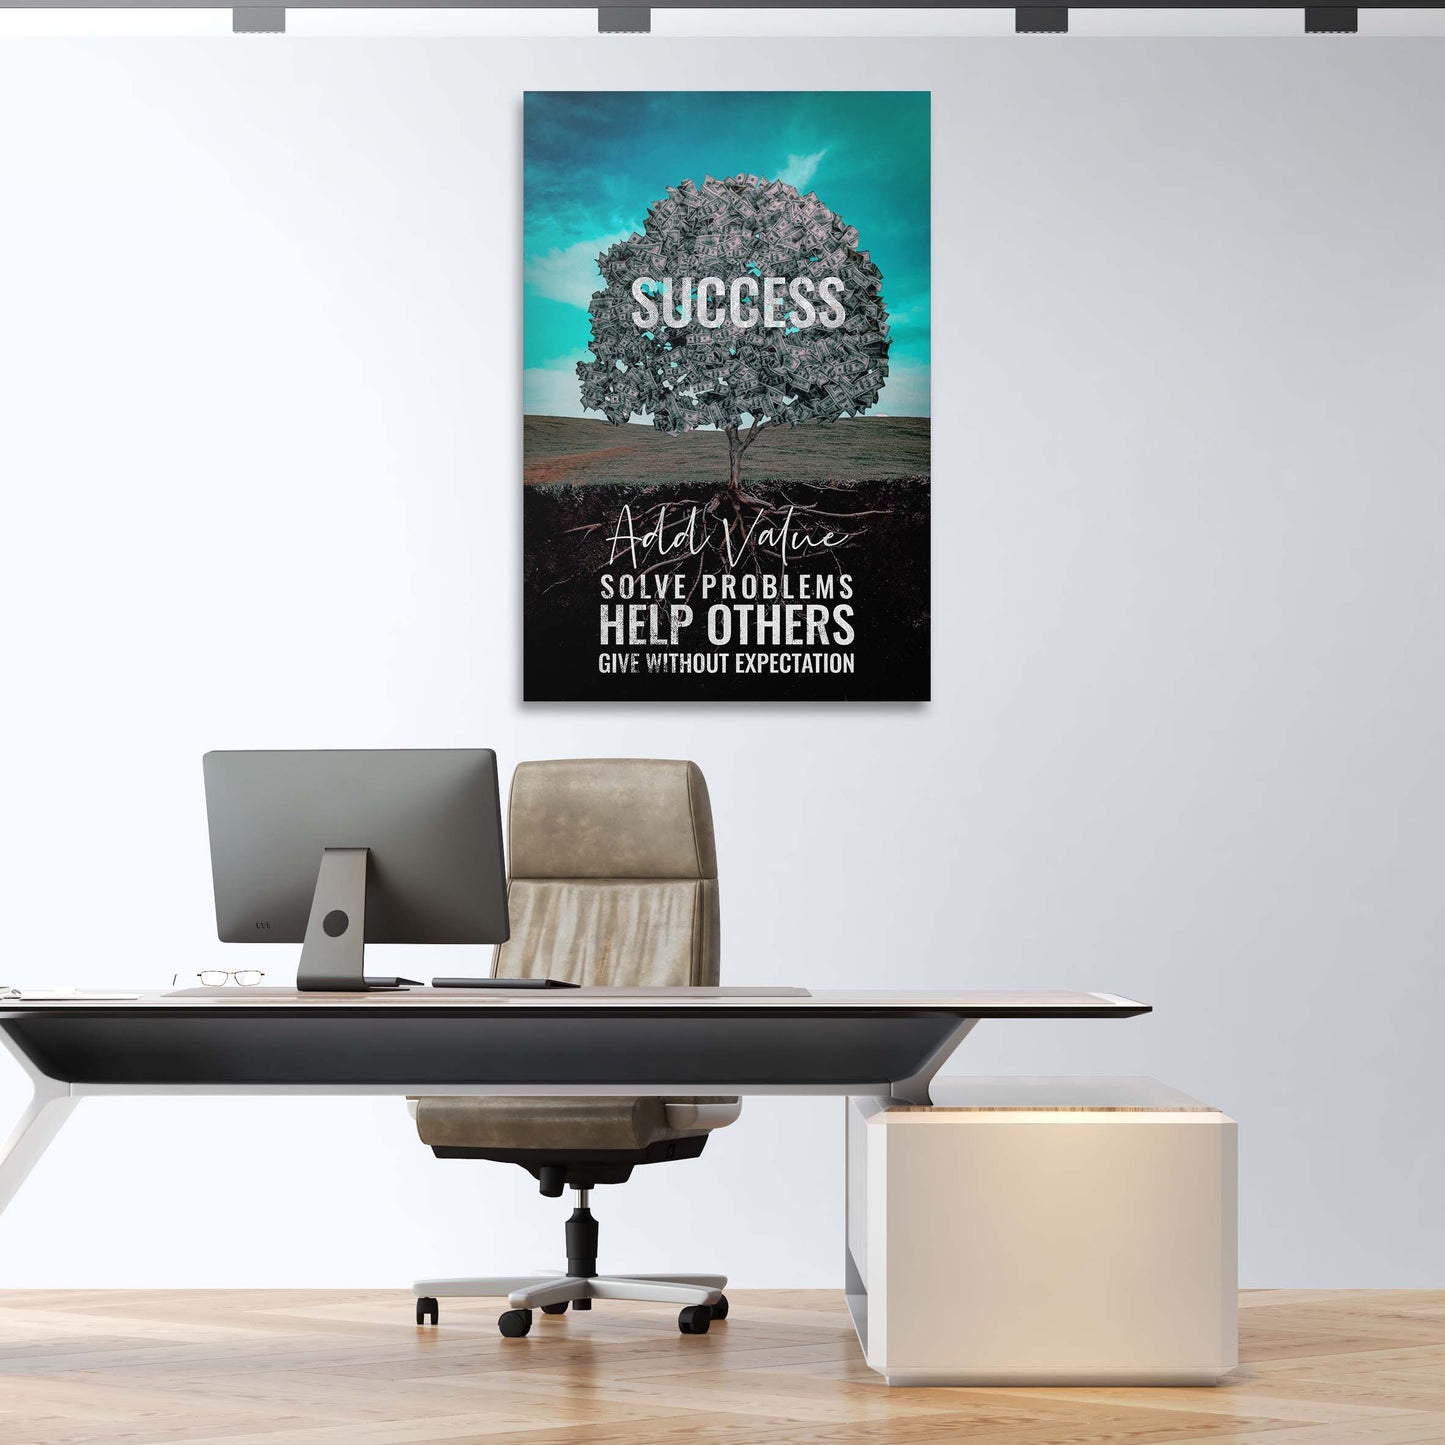 More Value More Success Tree Wall Art | Inspirational Wall Art Motivational Wall Art Quotes Office Art | ImpaktMaker Exclusive Canvas Art Portrait